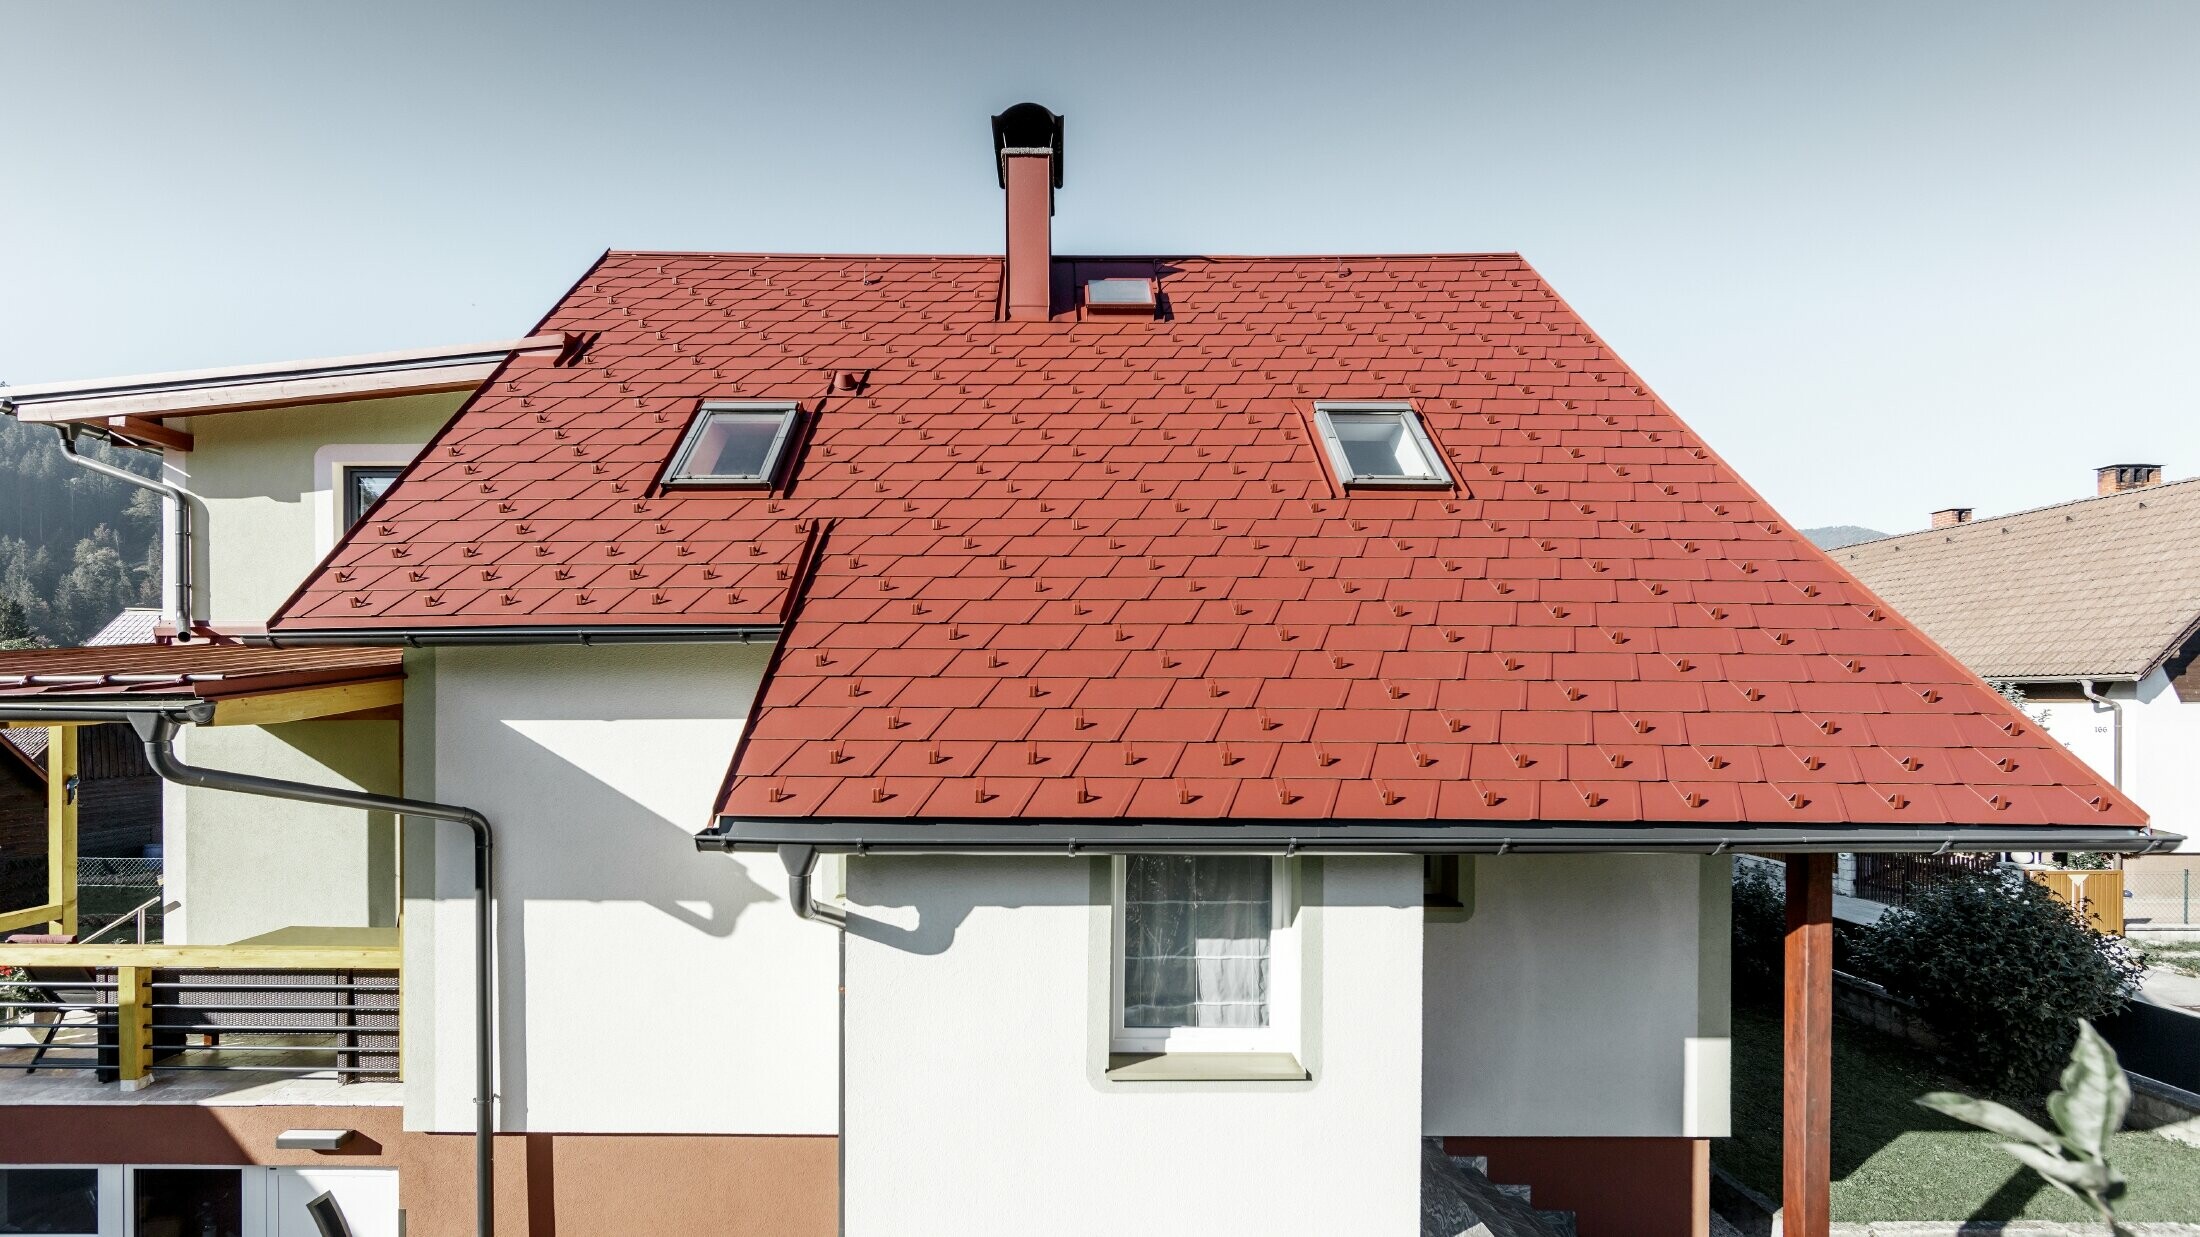 Casa unifamiliare ristrutturata con il nuovo tetto con scandola PREFA, la DS.19 è stata posata nel colore rosso ossido.